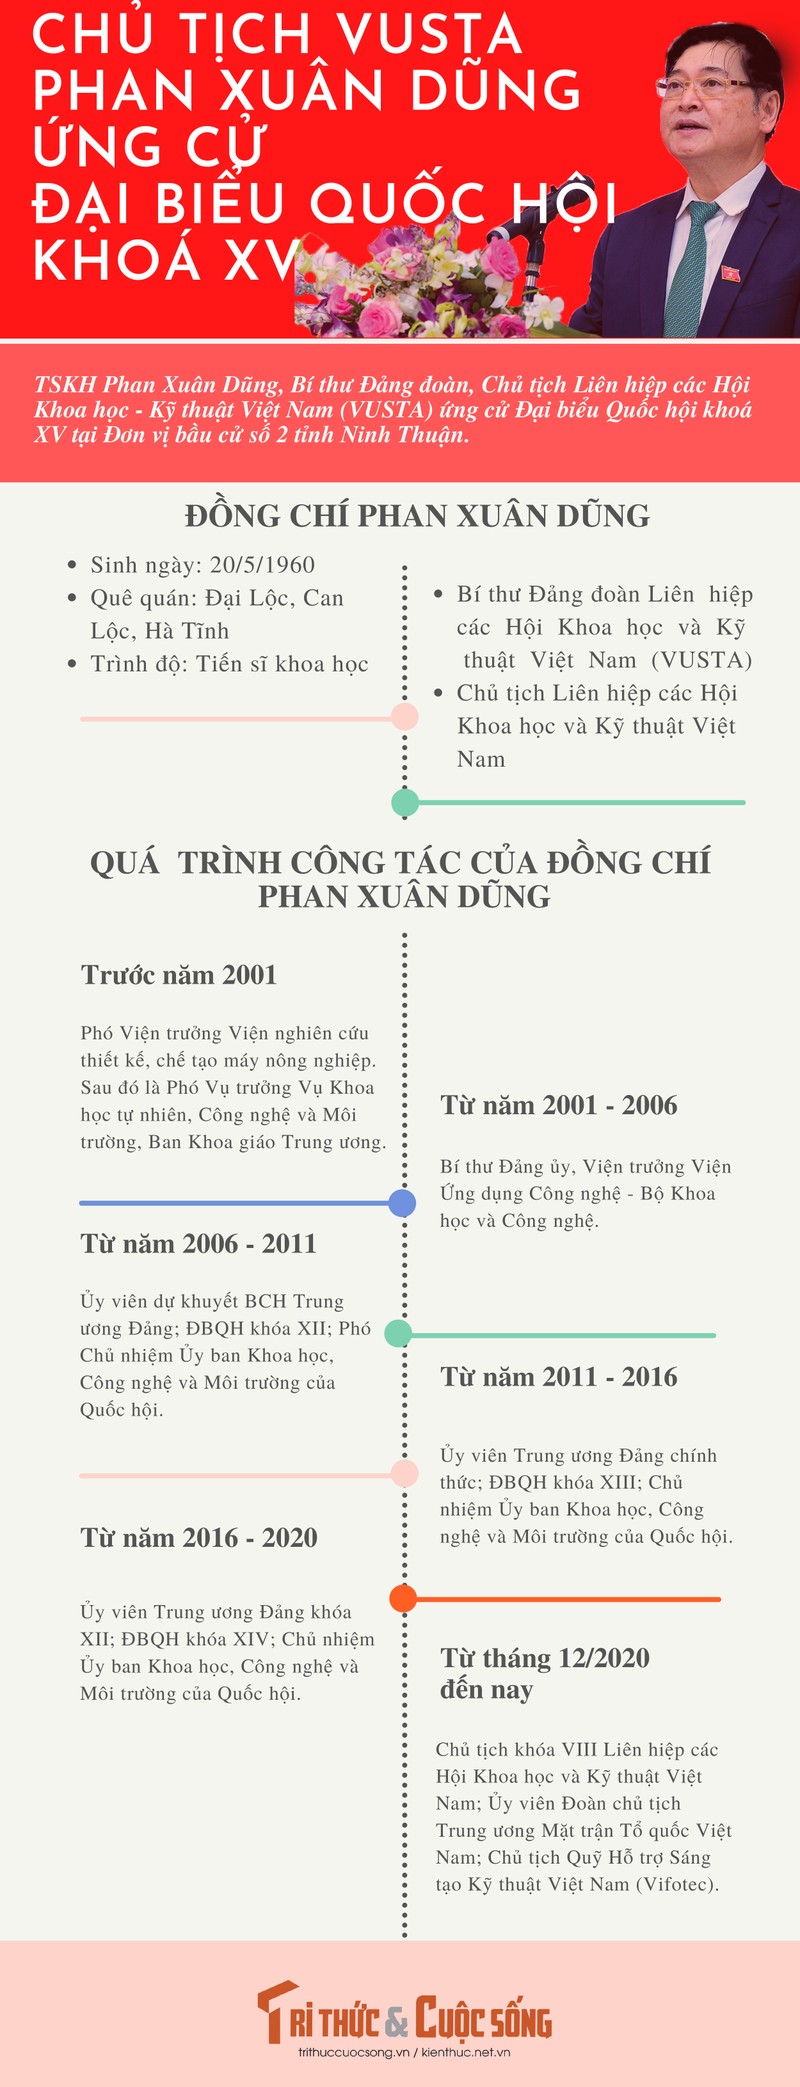 [Infographic] Chu tich VUSTA Phan Xuan Dung ung cu Dai bieu Quoc hoi khoa XV